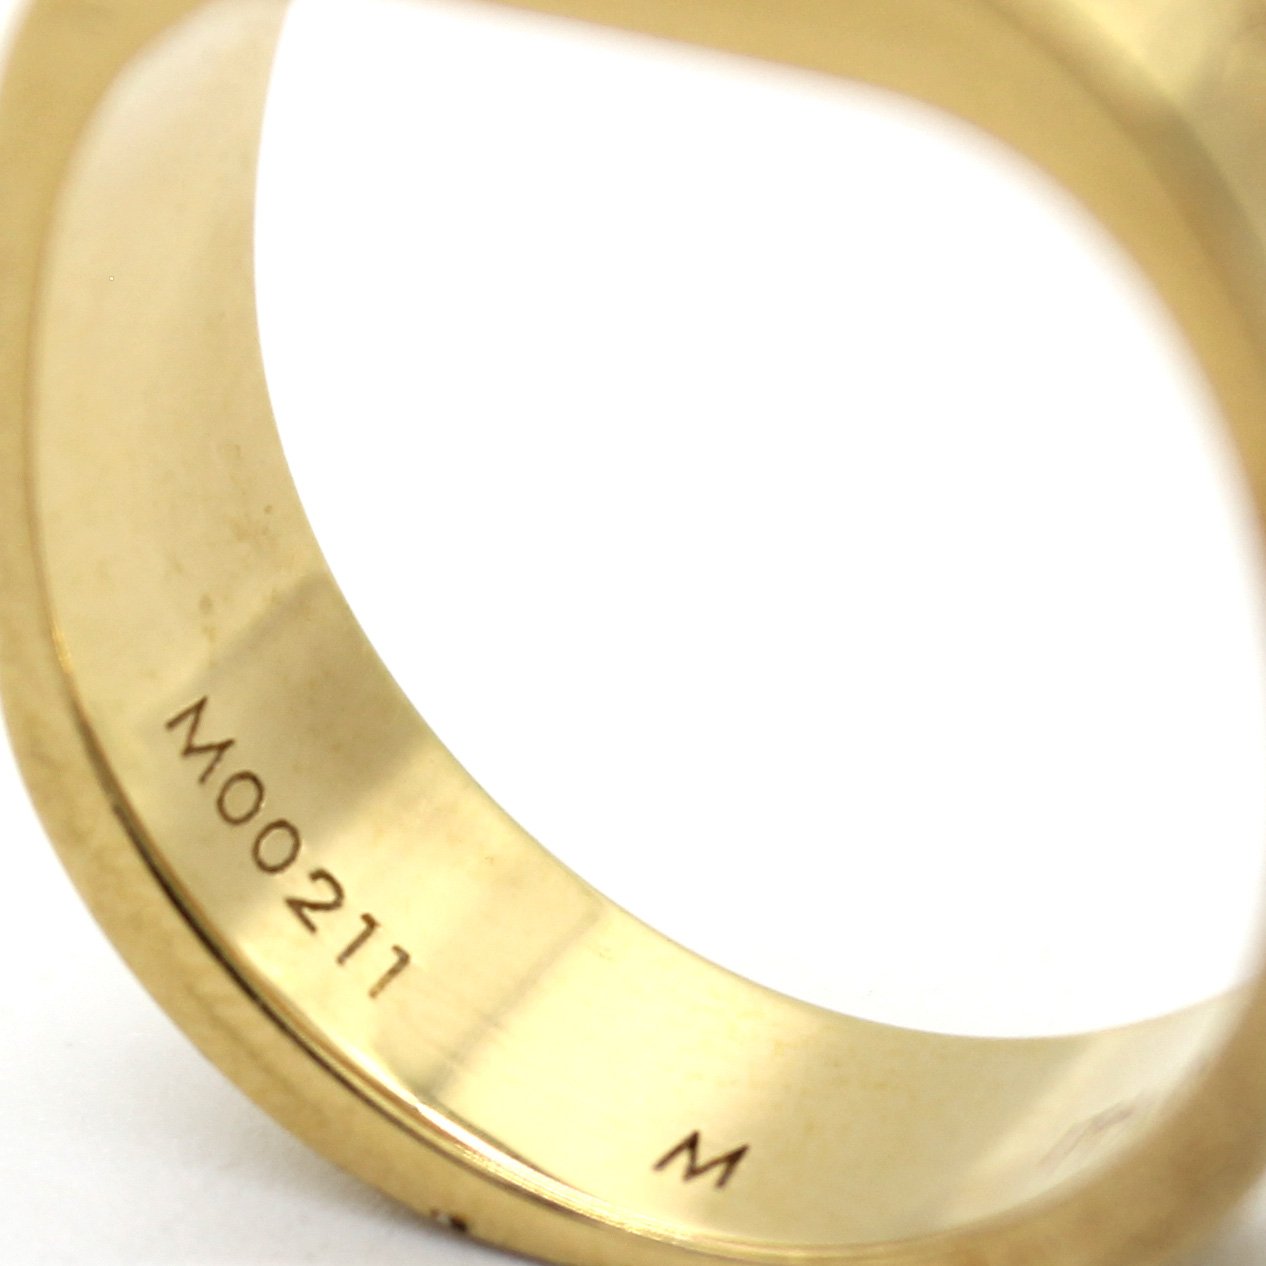 Louis Vuitton Nanogram Ring - Brass Band, Rings - LOU718656